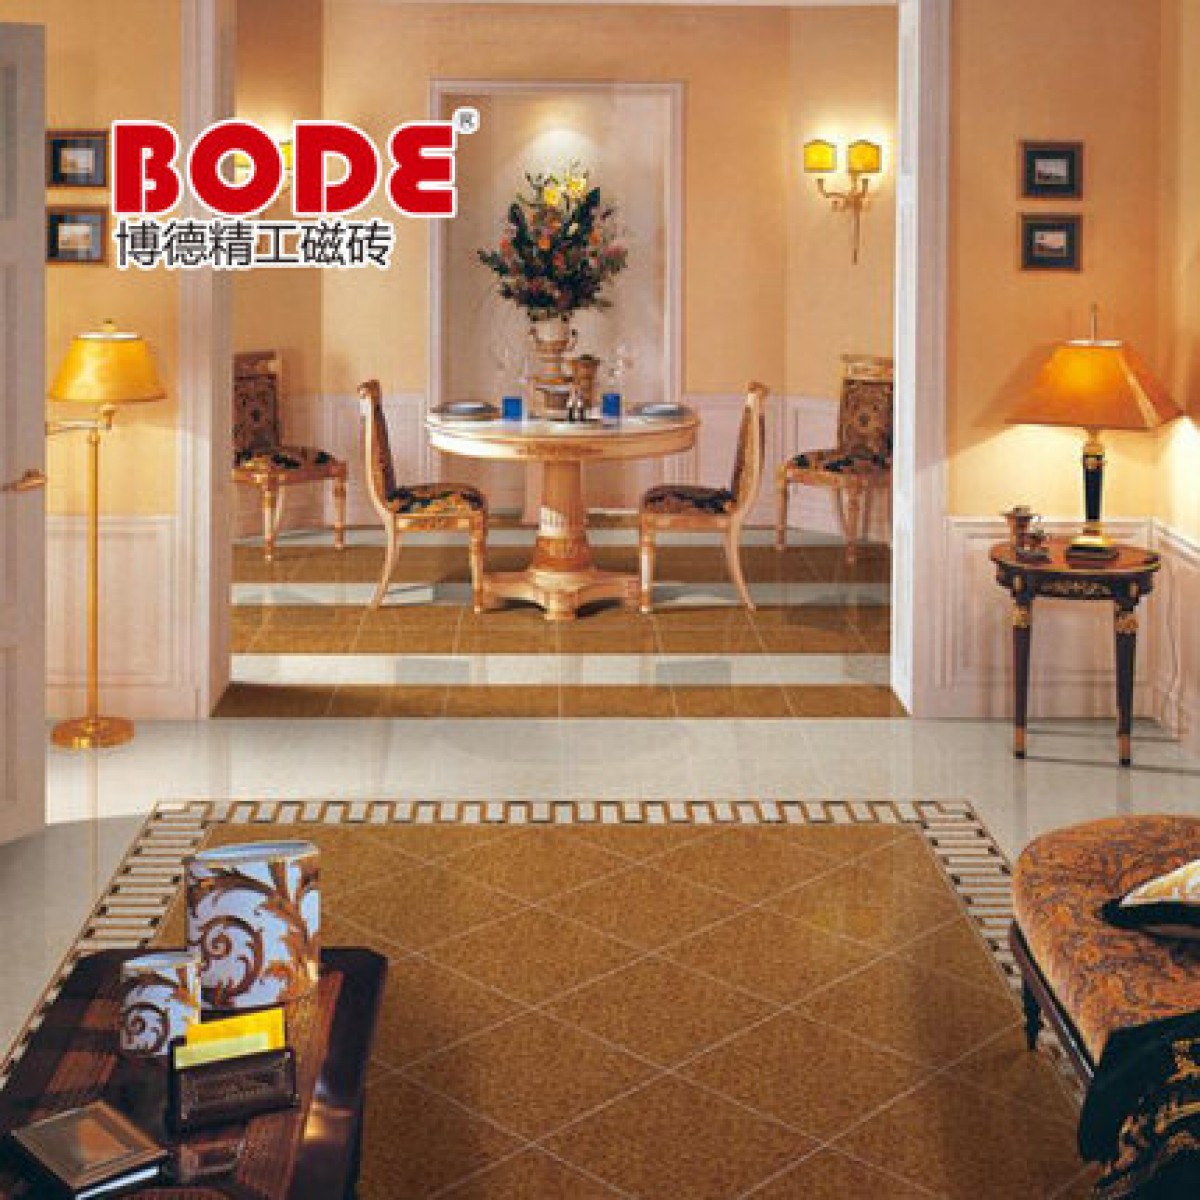 博德瓷砖 精工玉石 客厅地板砖 微晶石瓷砖 翠晶系列 B4J27